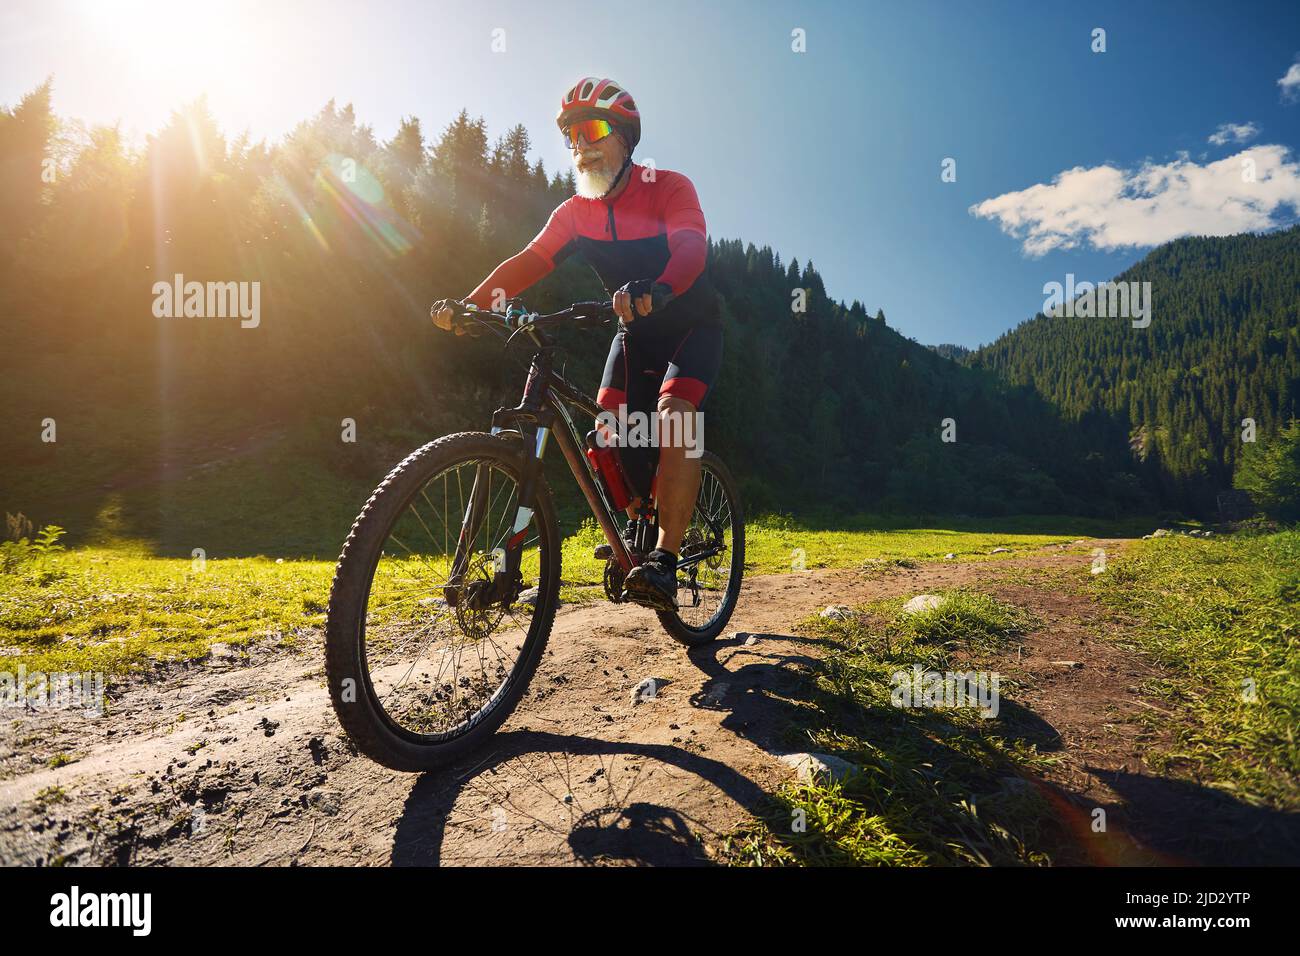 Vecchio ciclista con barba bianca corre la sua mountain bike nella foresta di abete rosso verde in costume rosso ad Almaty, Kazakhstan. Sport estremi e ricrea all'aperto Foto Stock